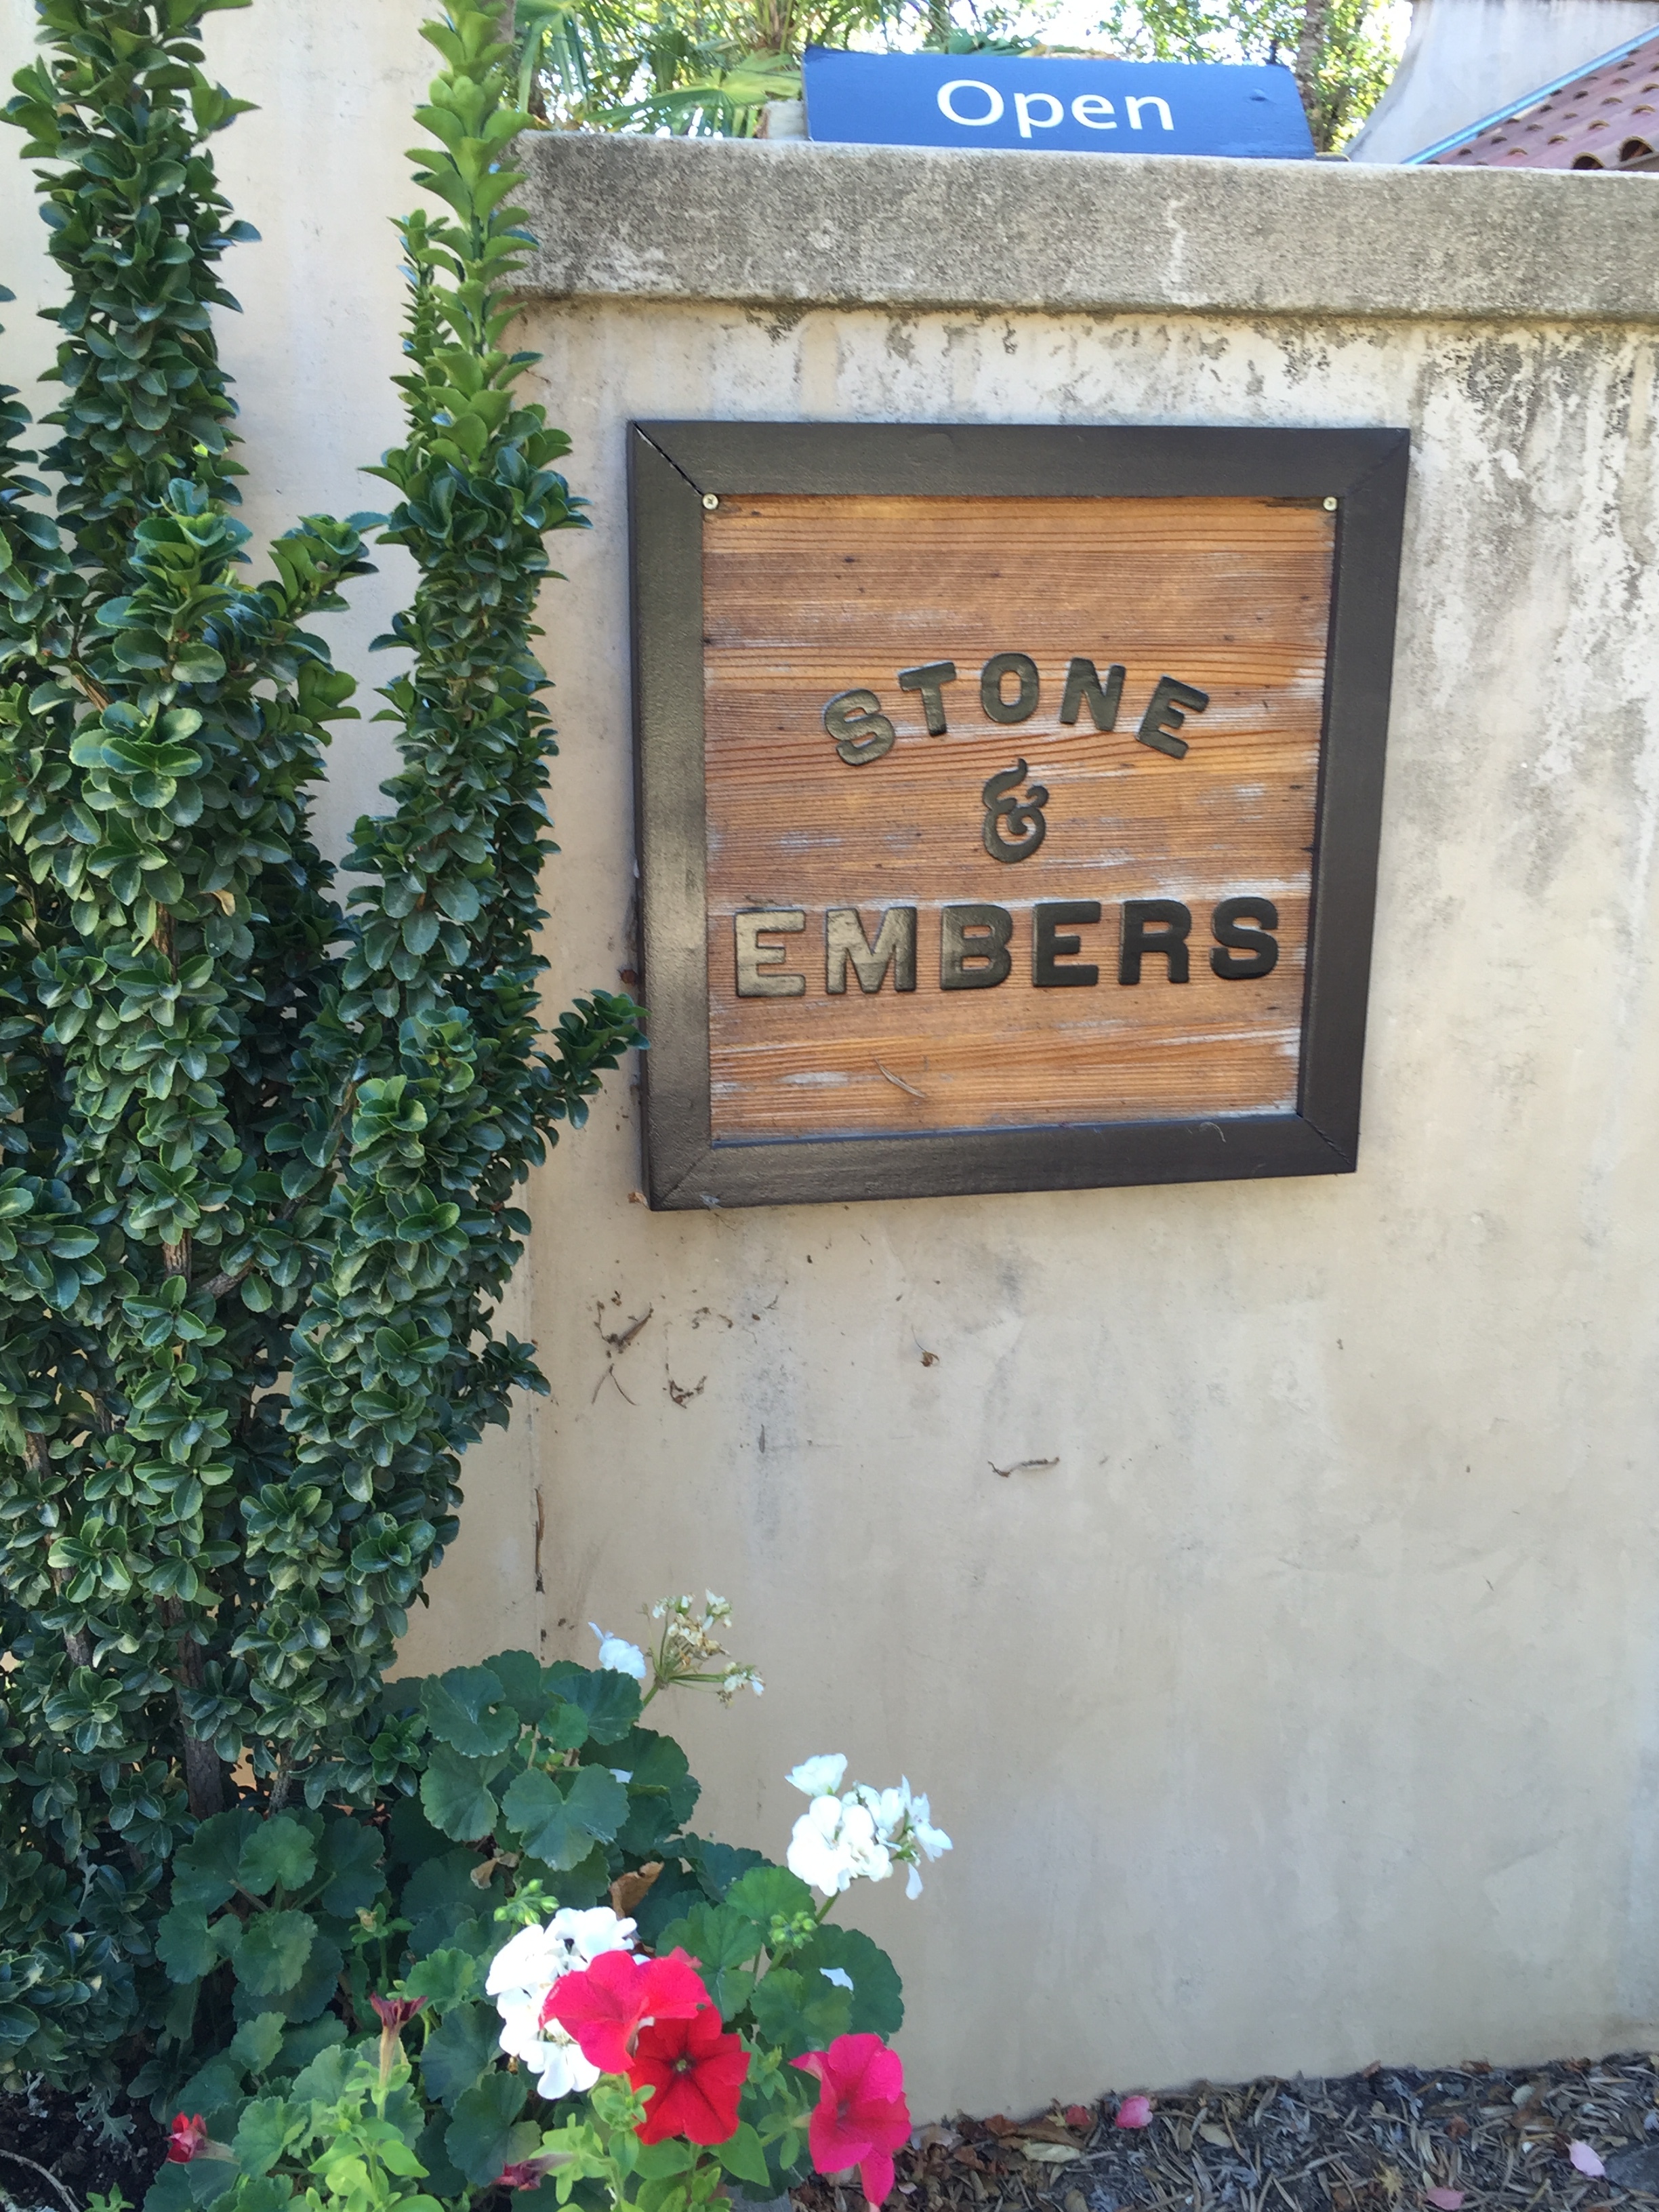 Stone & Embers